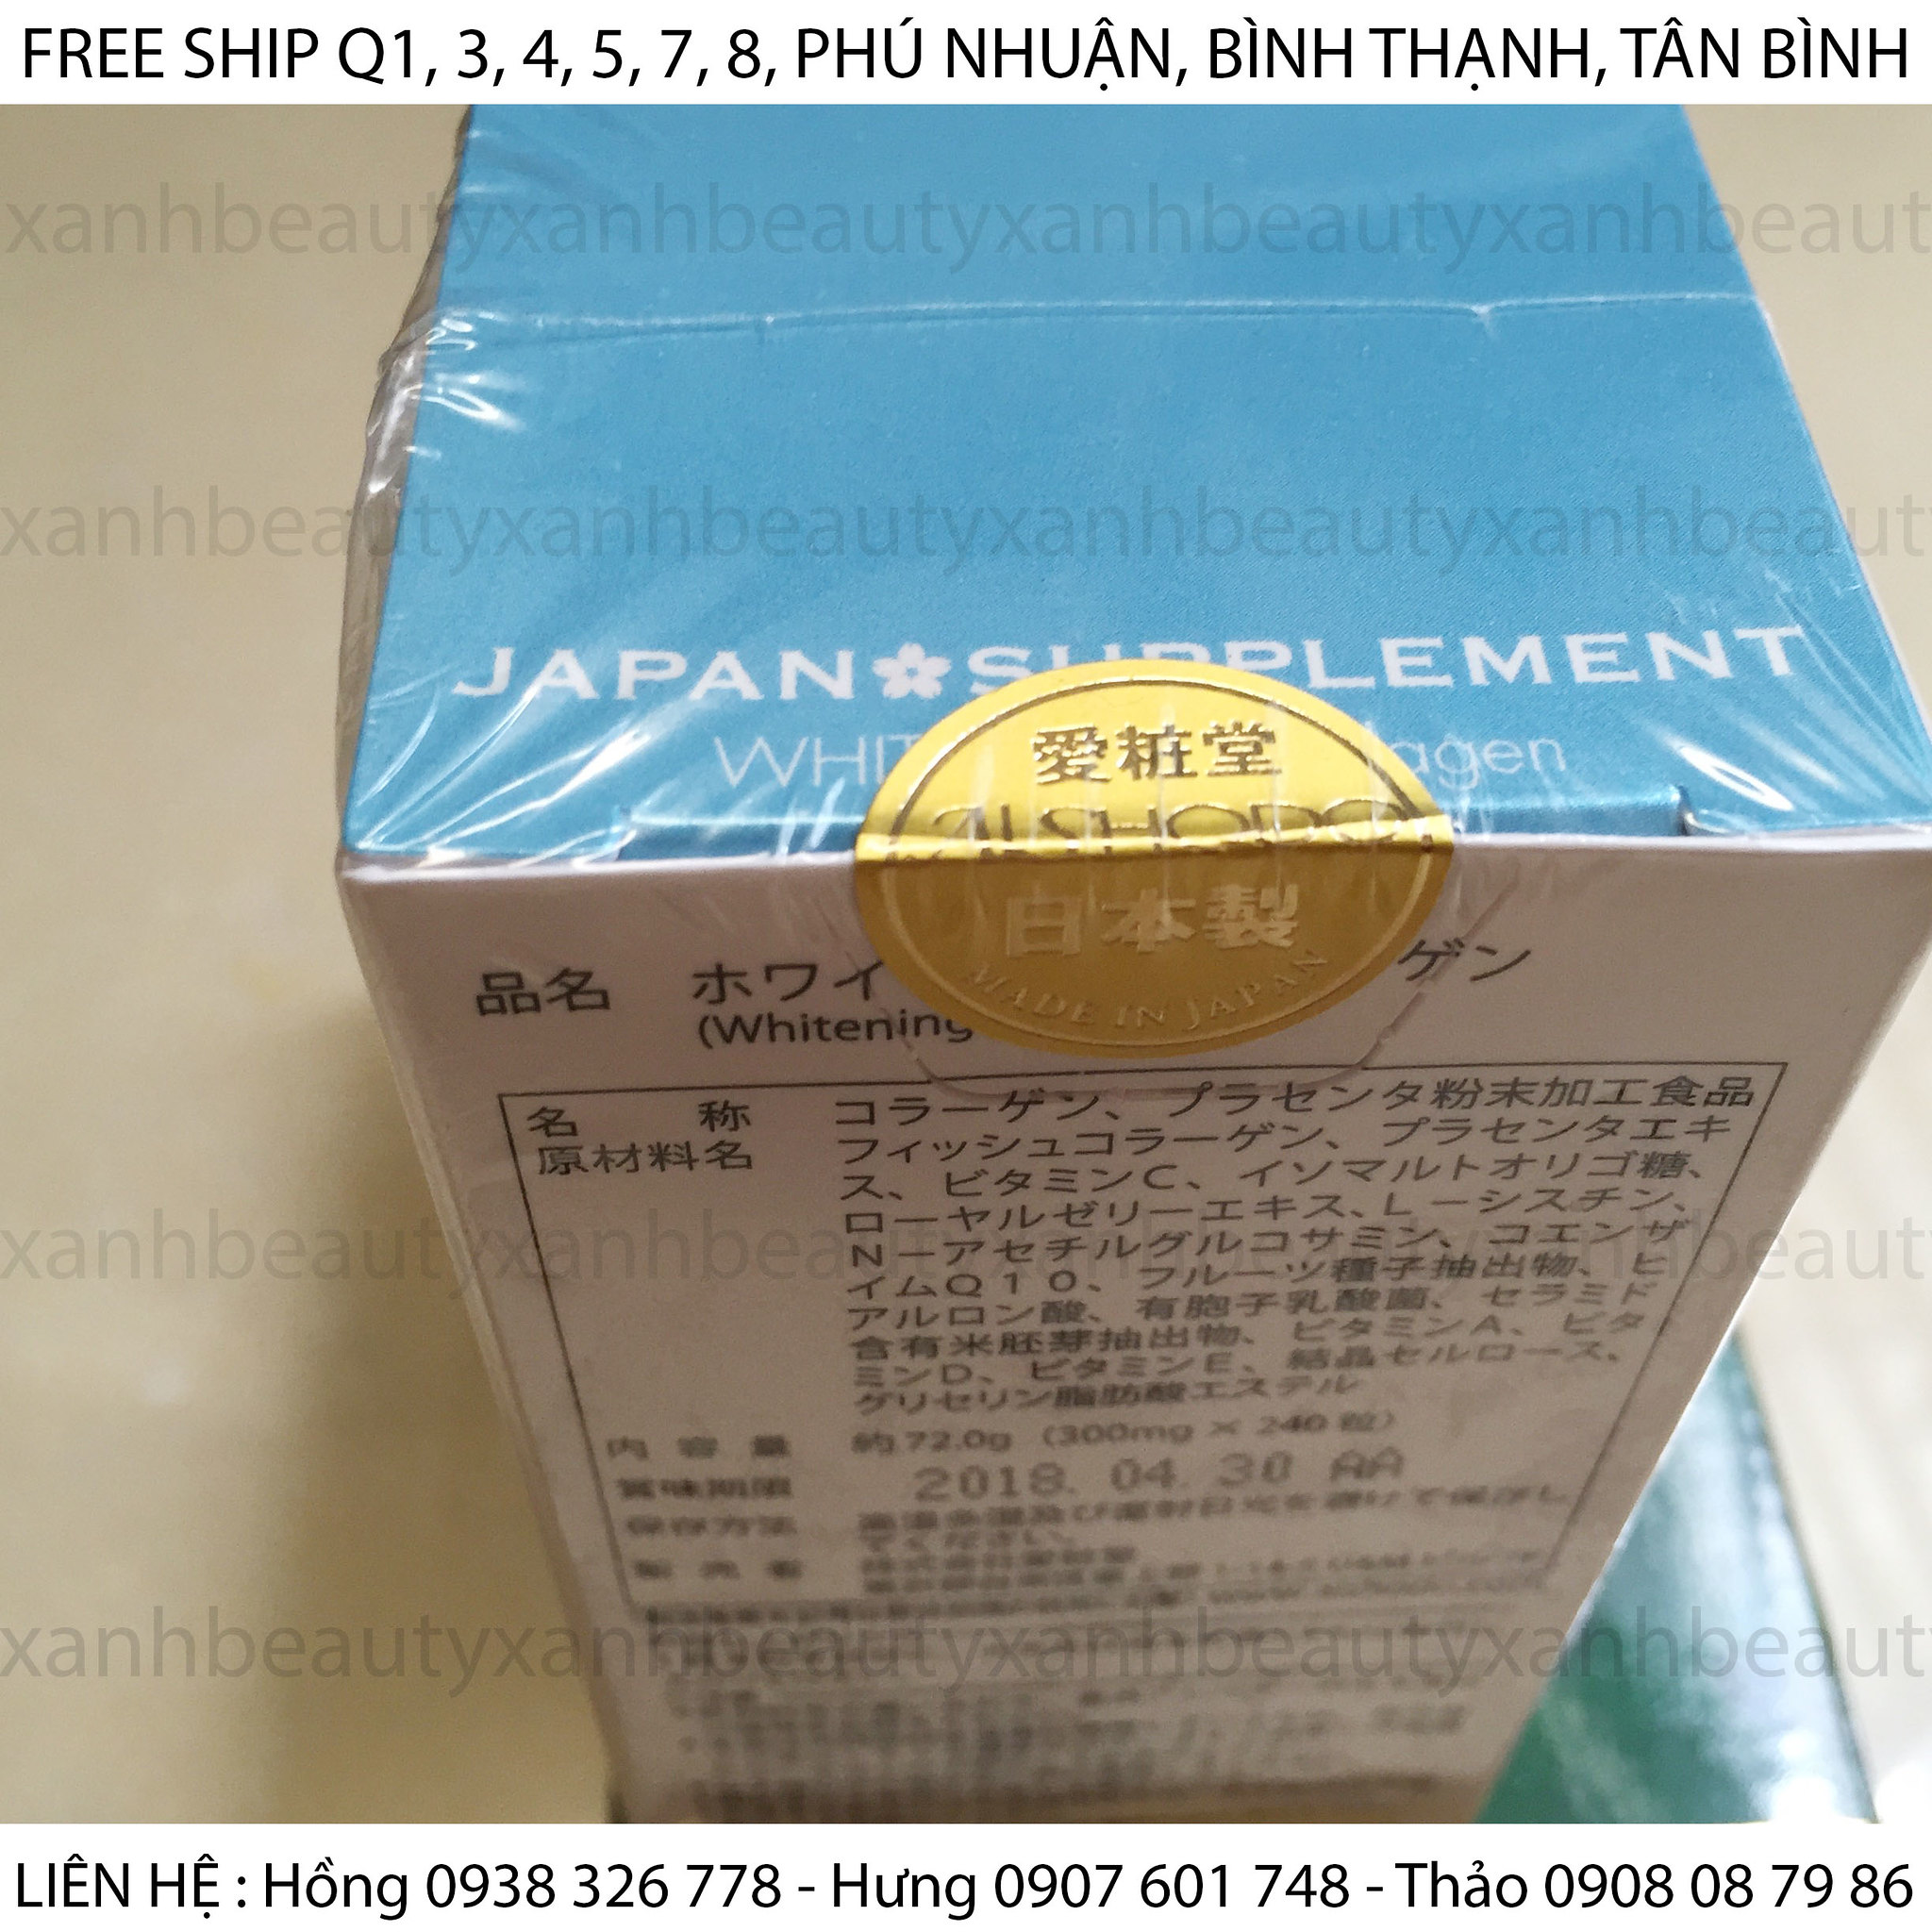 Toàn Quốc - Chuyên Collagen Aishodo nhập khẩu chính hãng từ Nhật Bản - 4